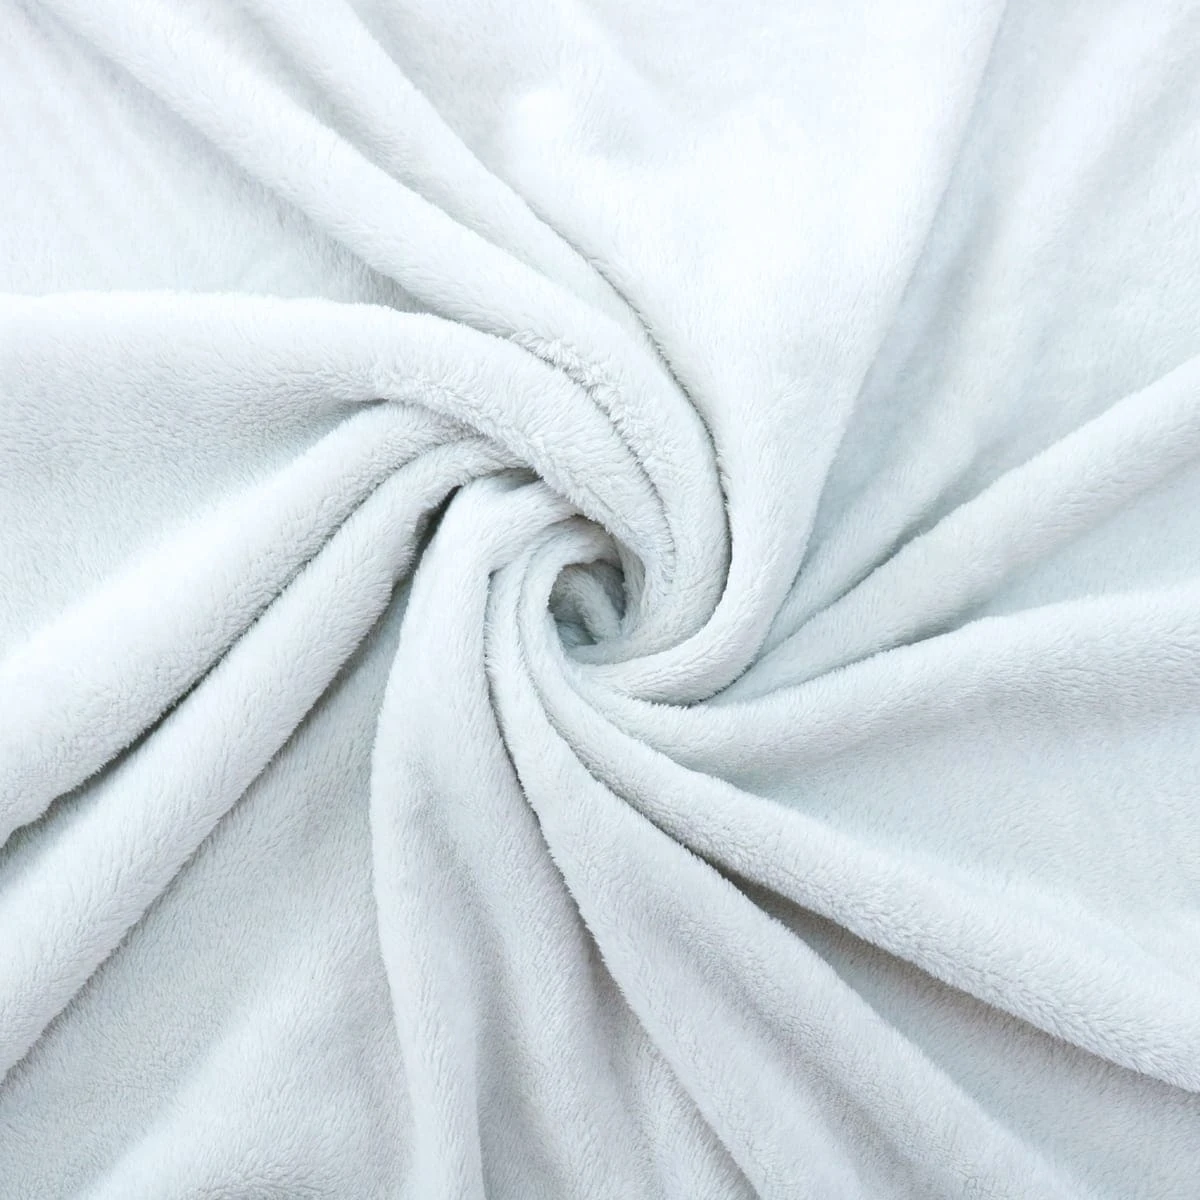 3D Diamond Pattern Flannel Blanket (Light Grey)